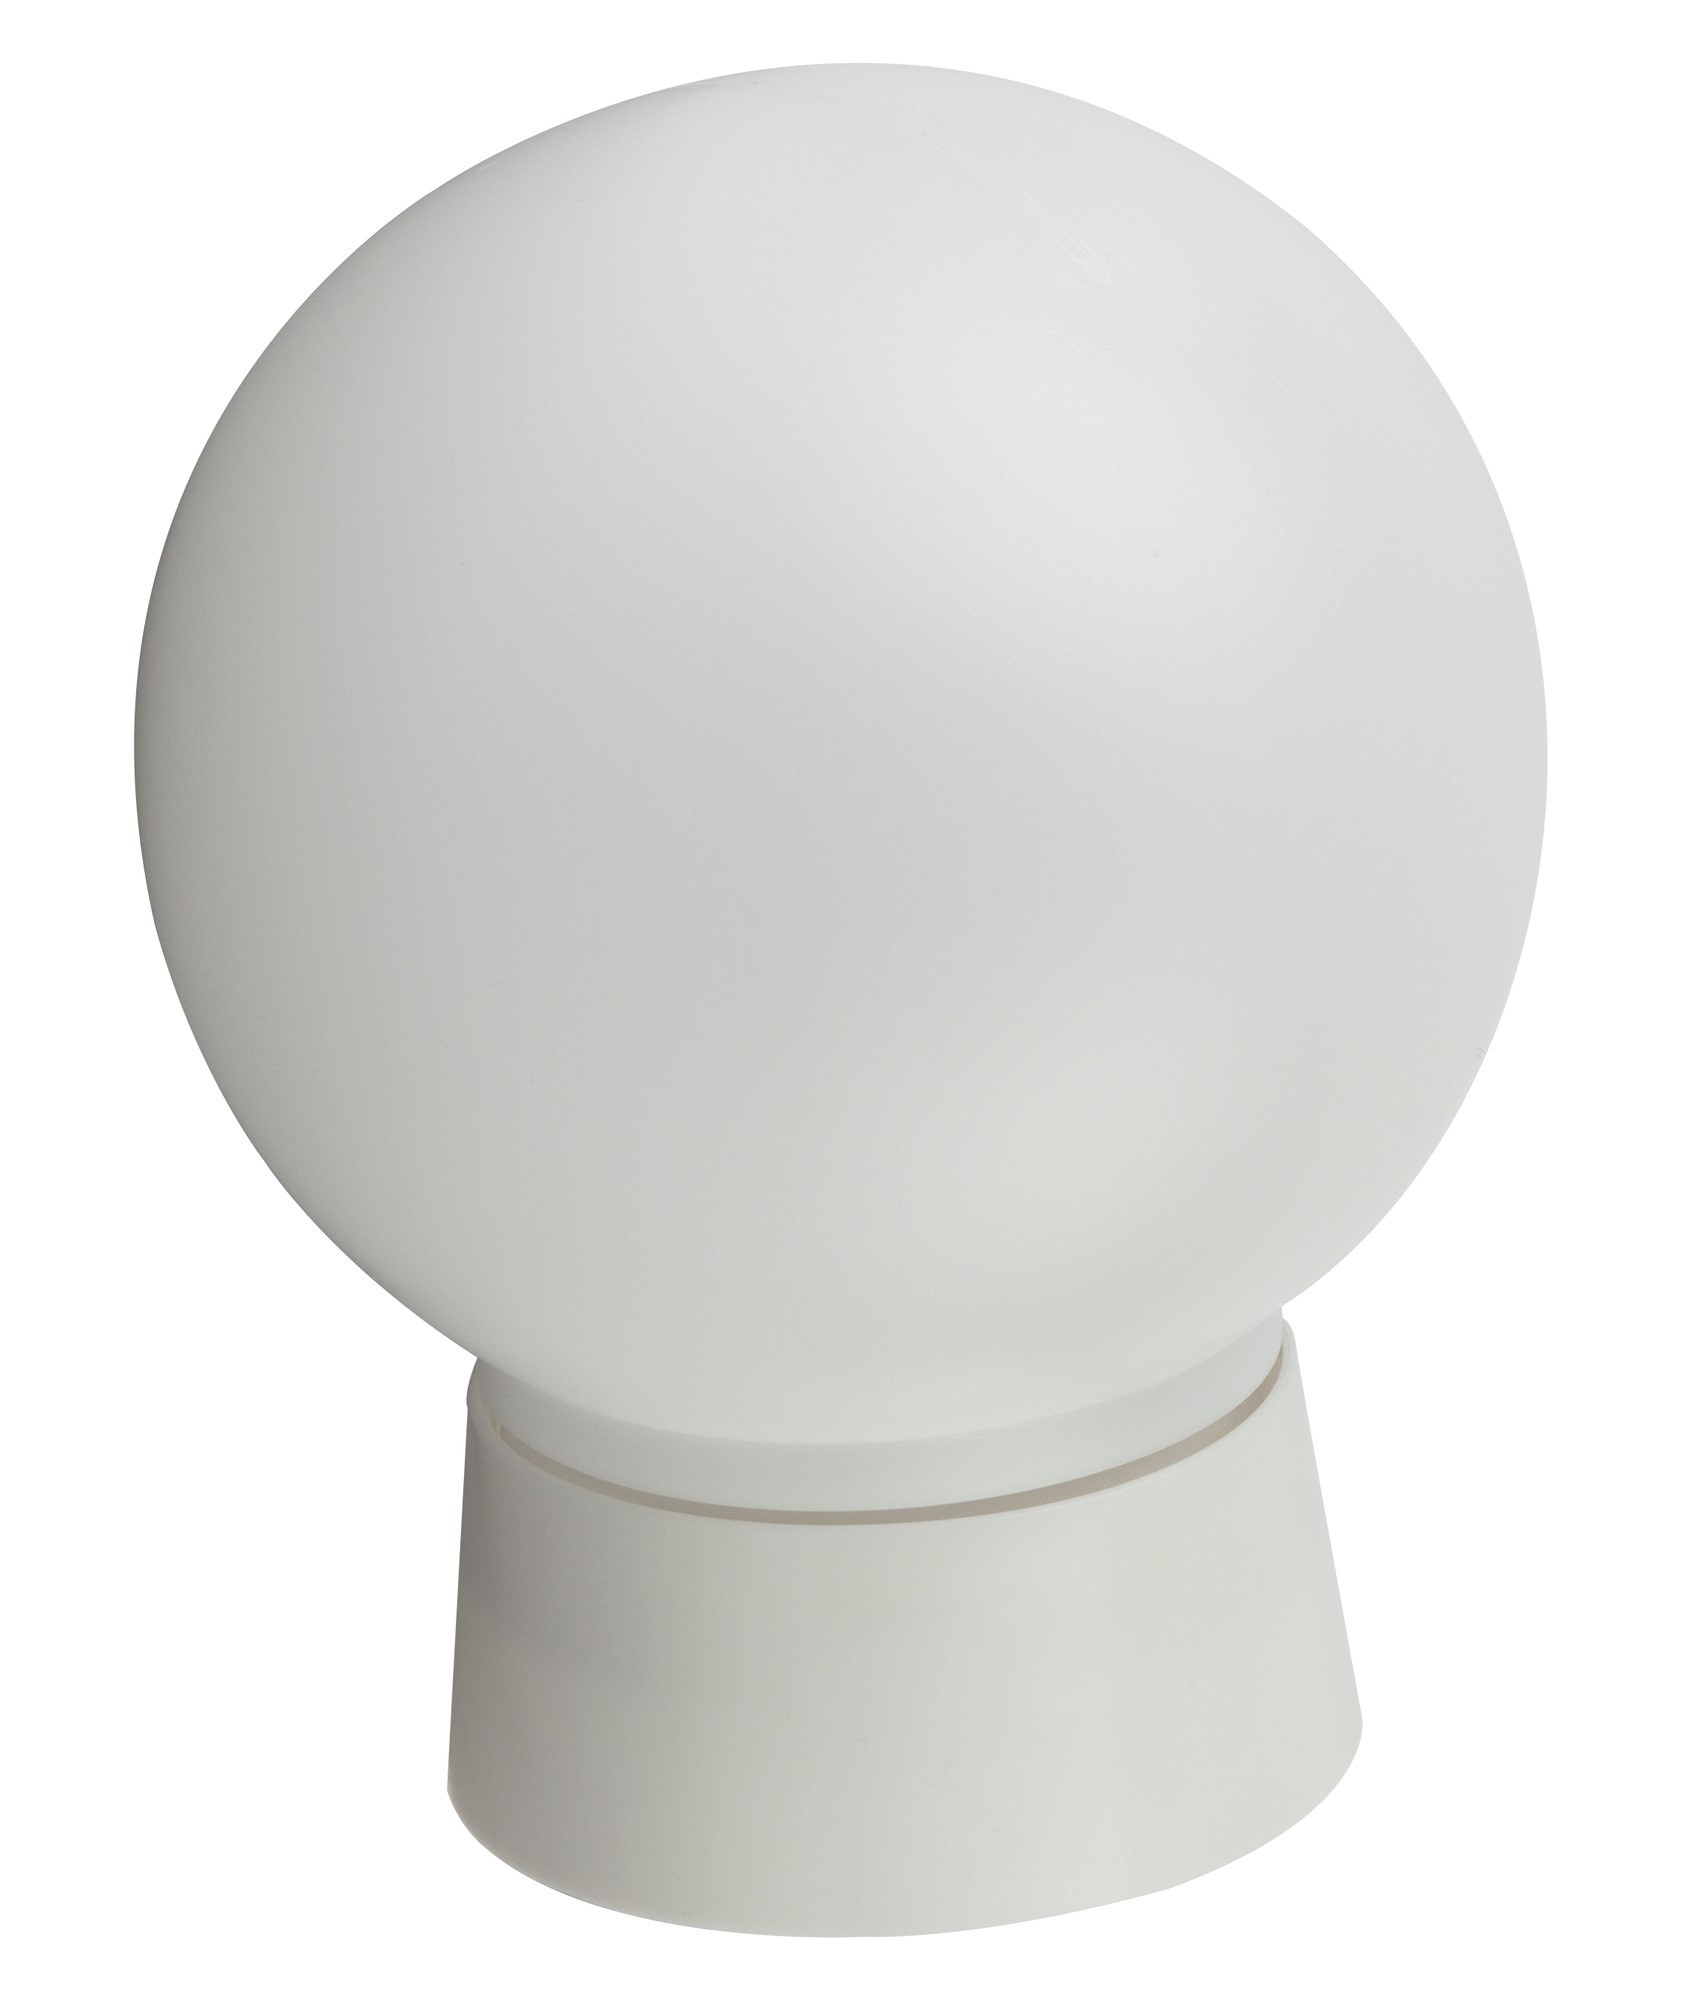 Светильник ЭРА  НБП 01-60-004 c прямым основанием Гранат полиэтилен IP20 E27 max 60Вт D150 шар белый